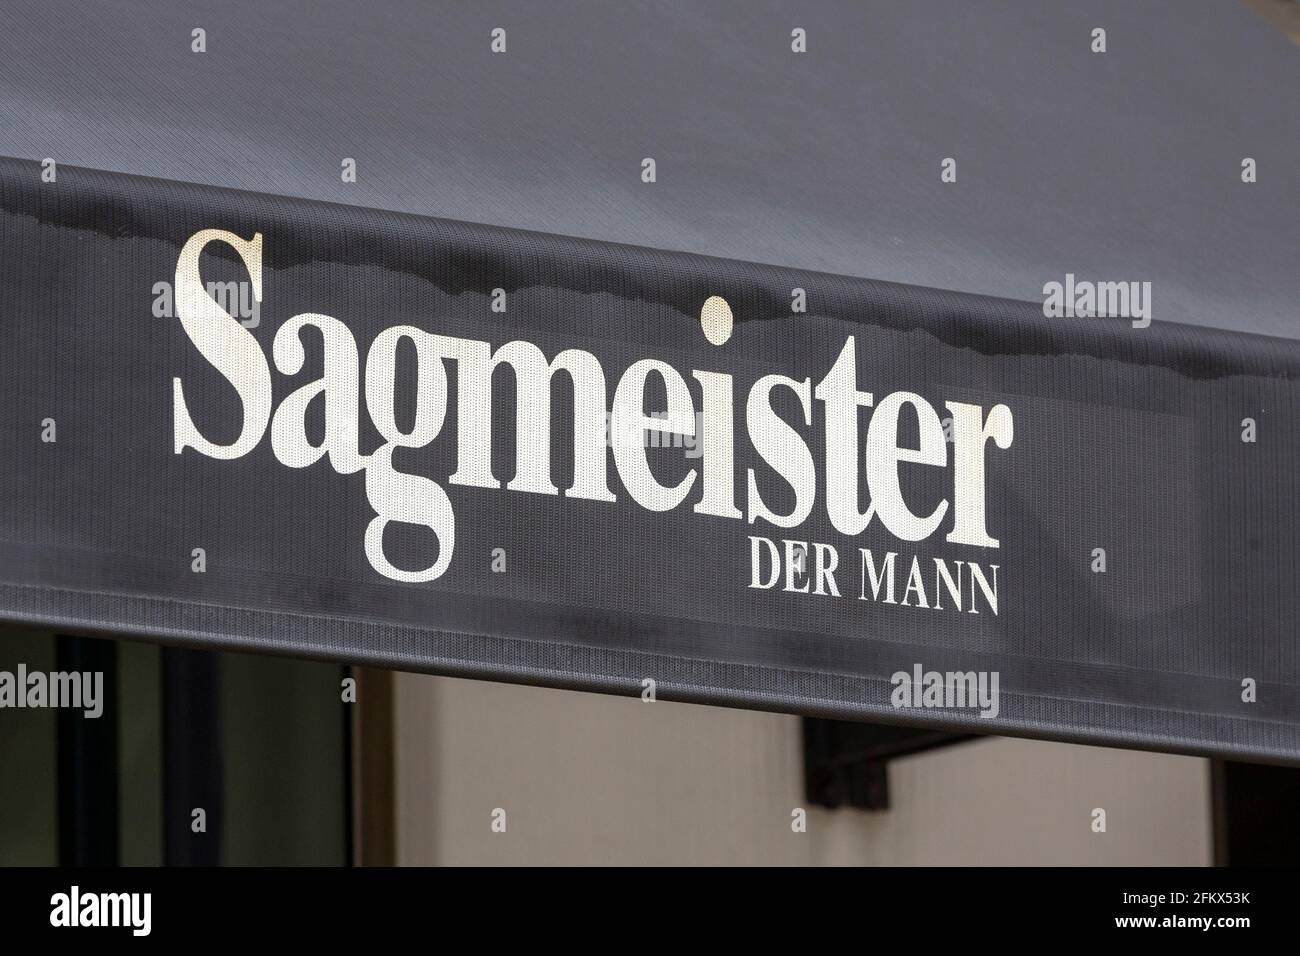 Sagmeister, The Man, Bregenz, Austria Stock Photo